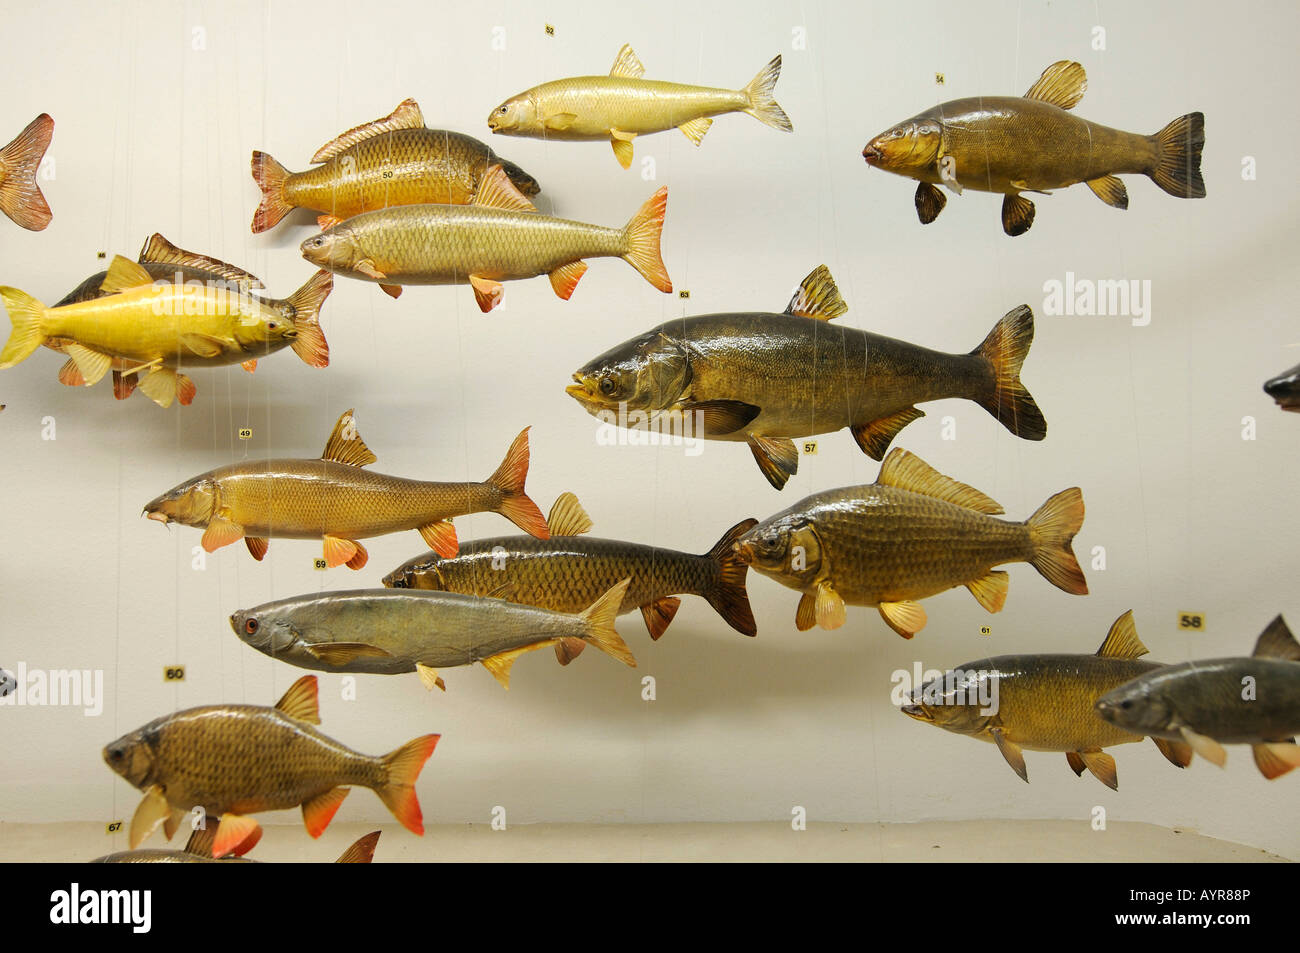 Modelos de pescado, Deutsches Jagd- und Fischereimuseum (Museo Alemán de Caza y Pesca), Munich, Baviera, Alemania Foto de stock